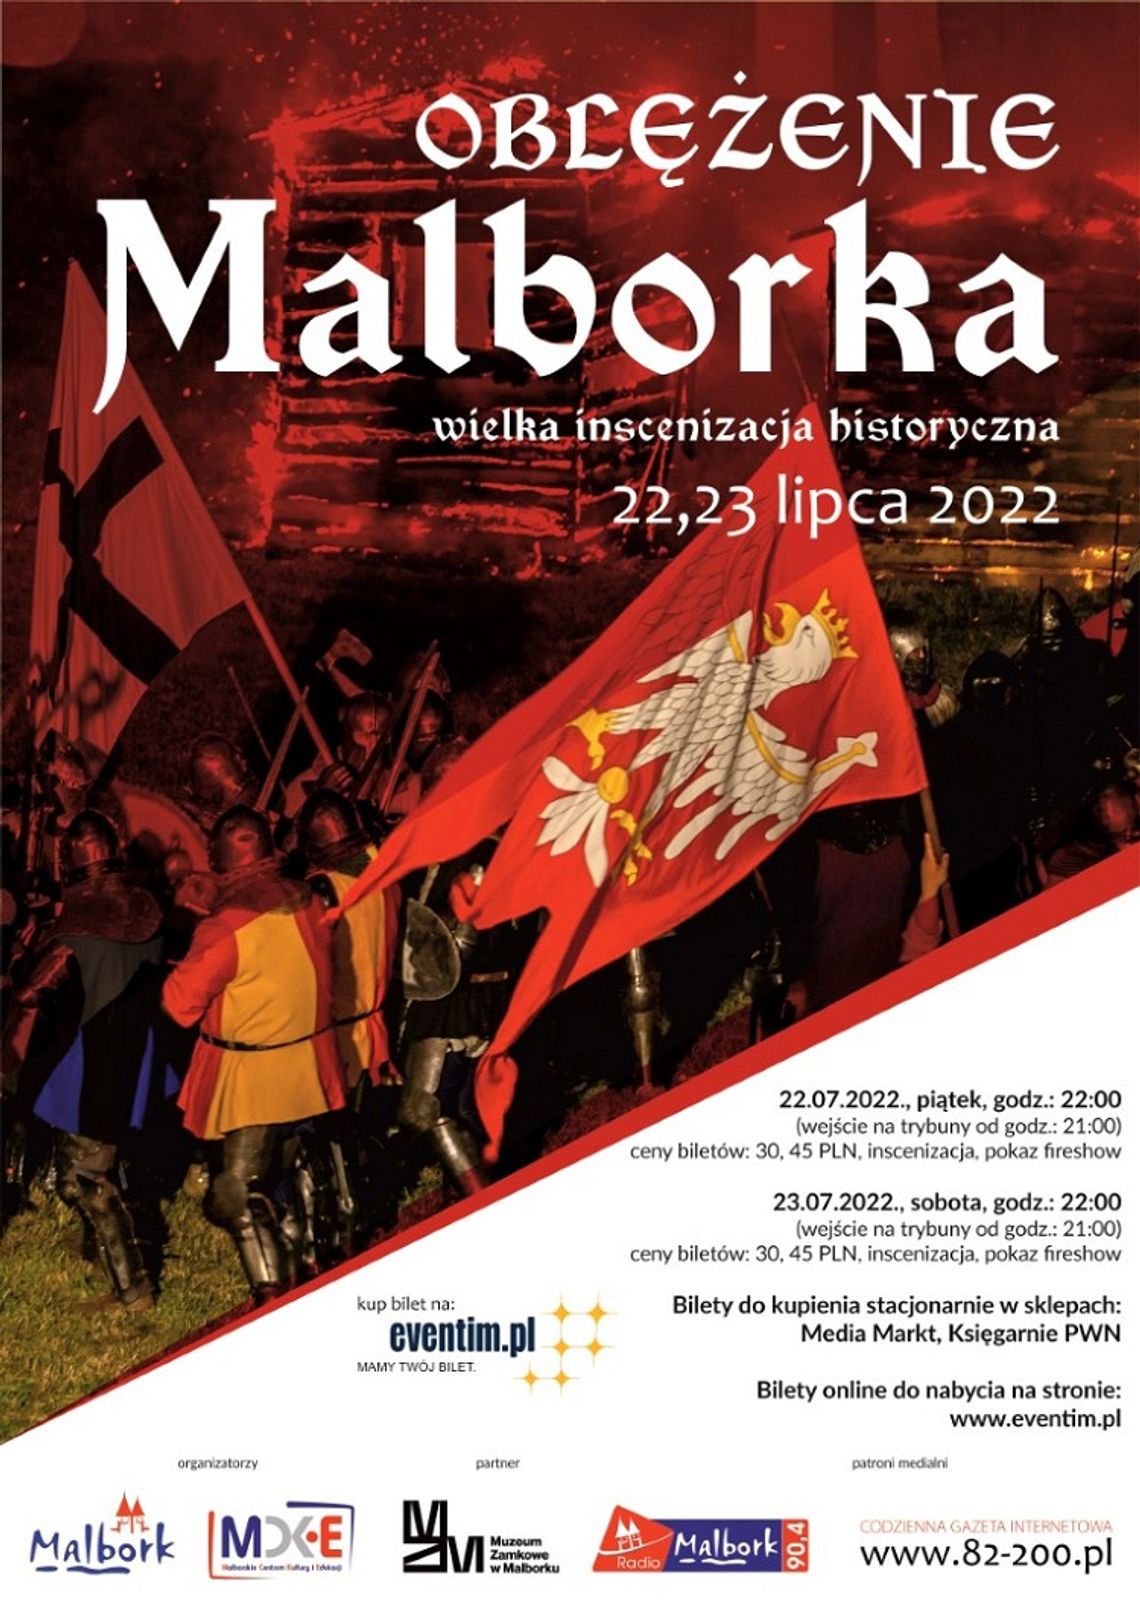 Oblężenie Malborka 2022. Zobacz gdzie kupić bilety na wieczorne inscenizacje.